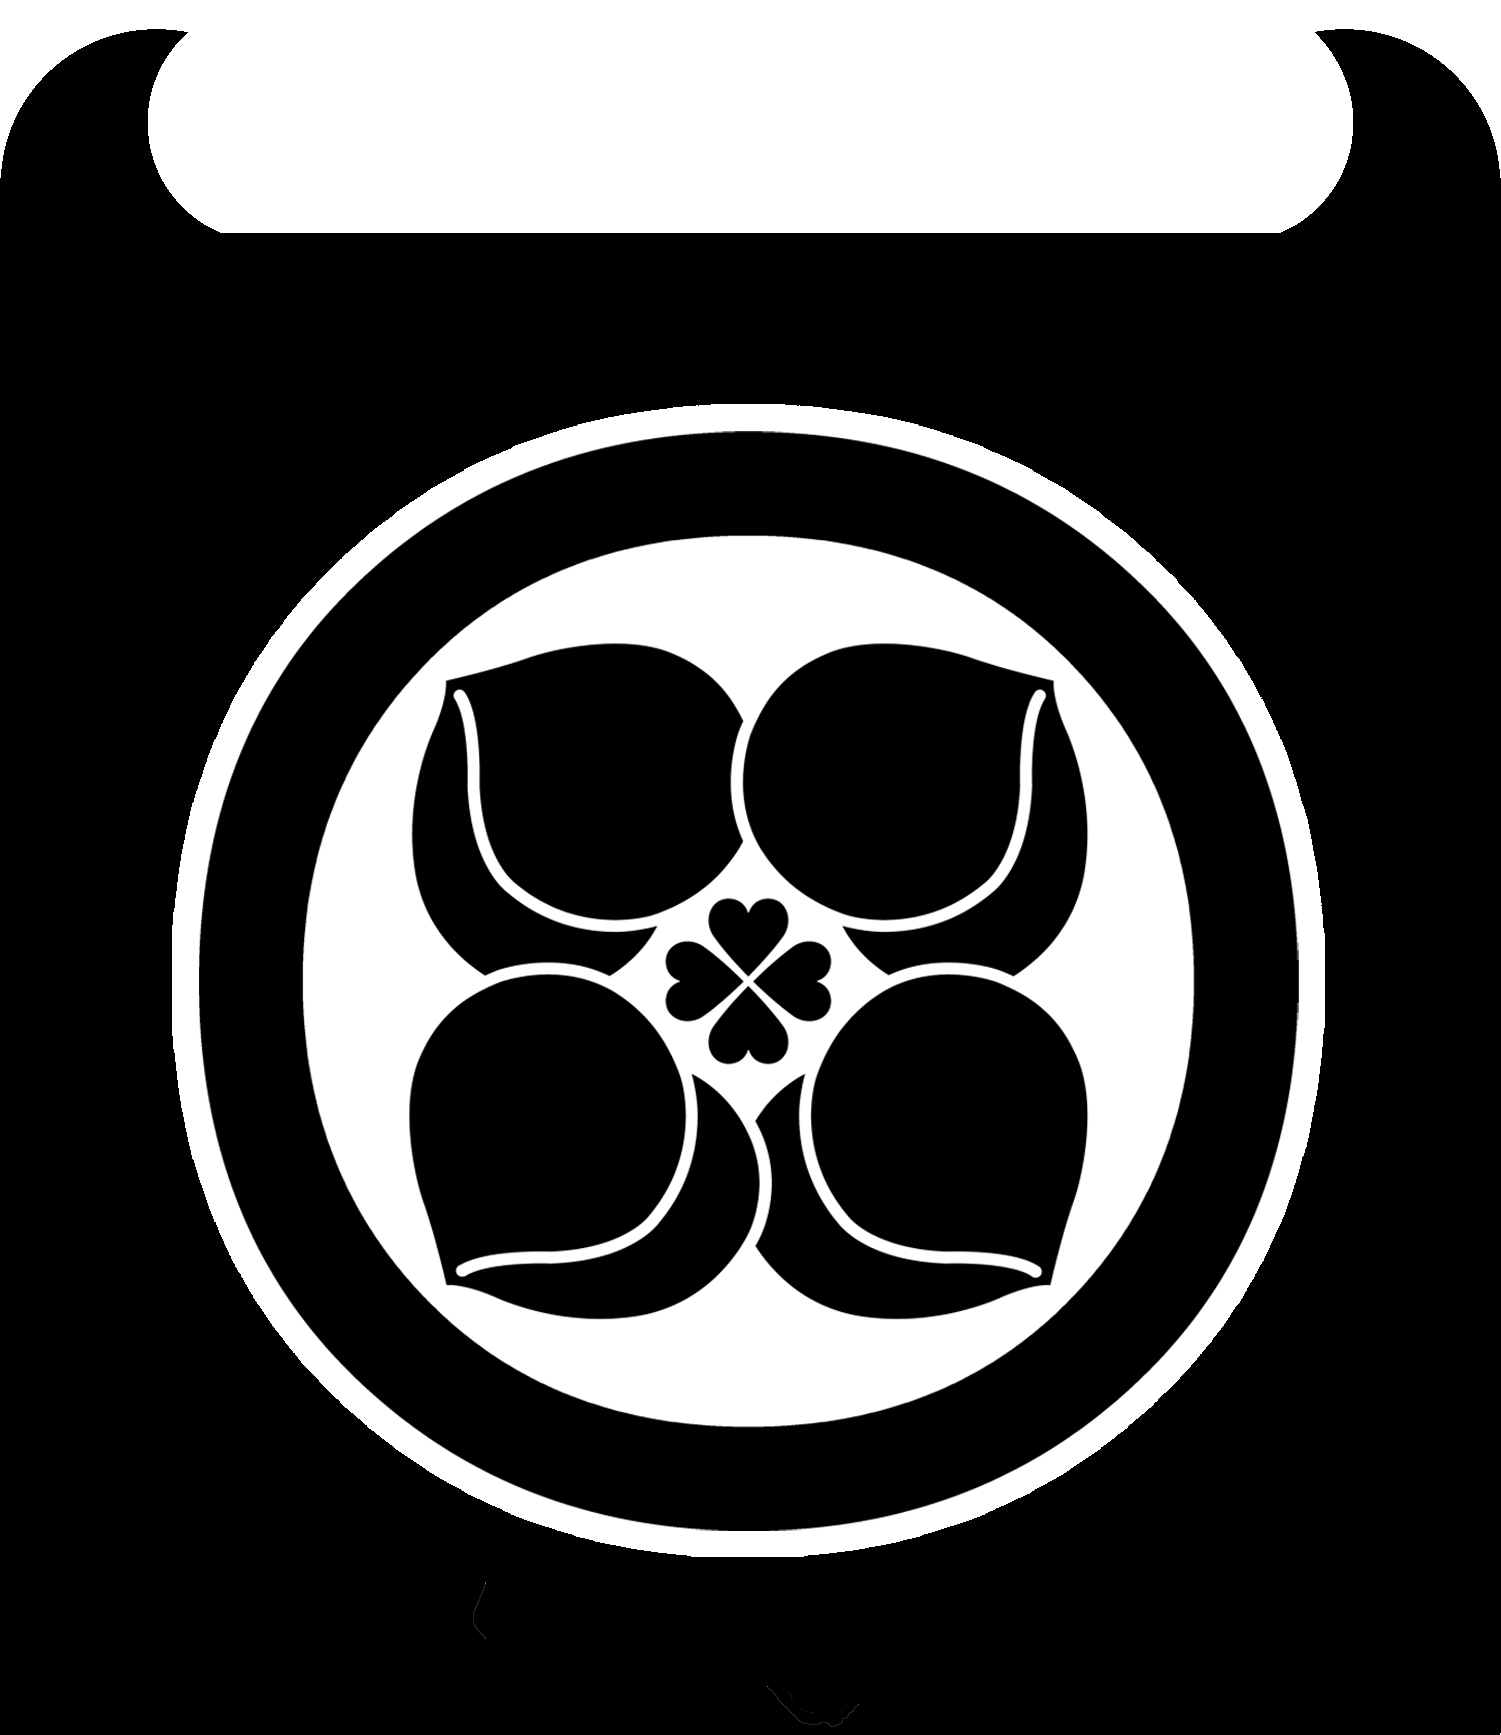 桃神祭16 の ロゴっぽい素材 最適化ロゴ 自作ロゴ公開 主にももクロ ロゴ 画像